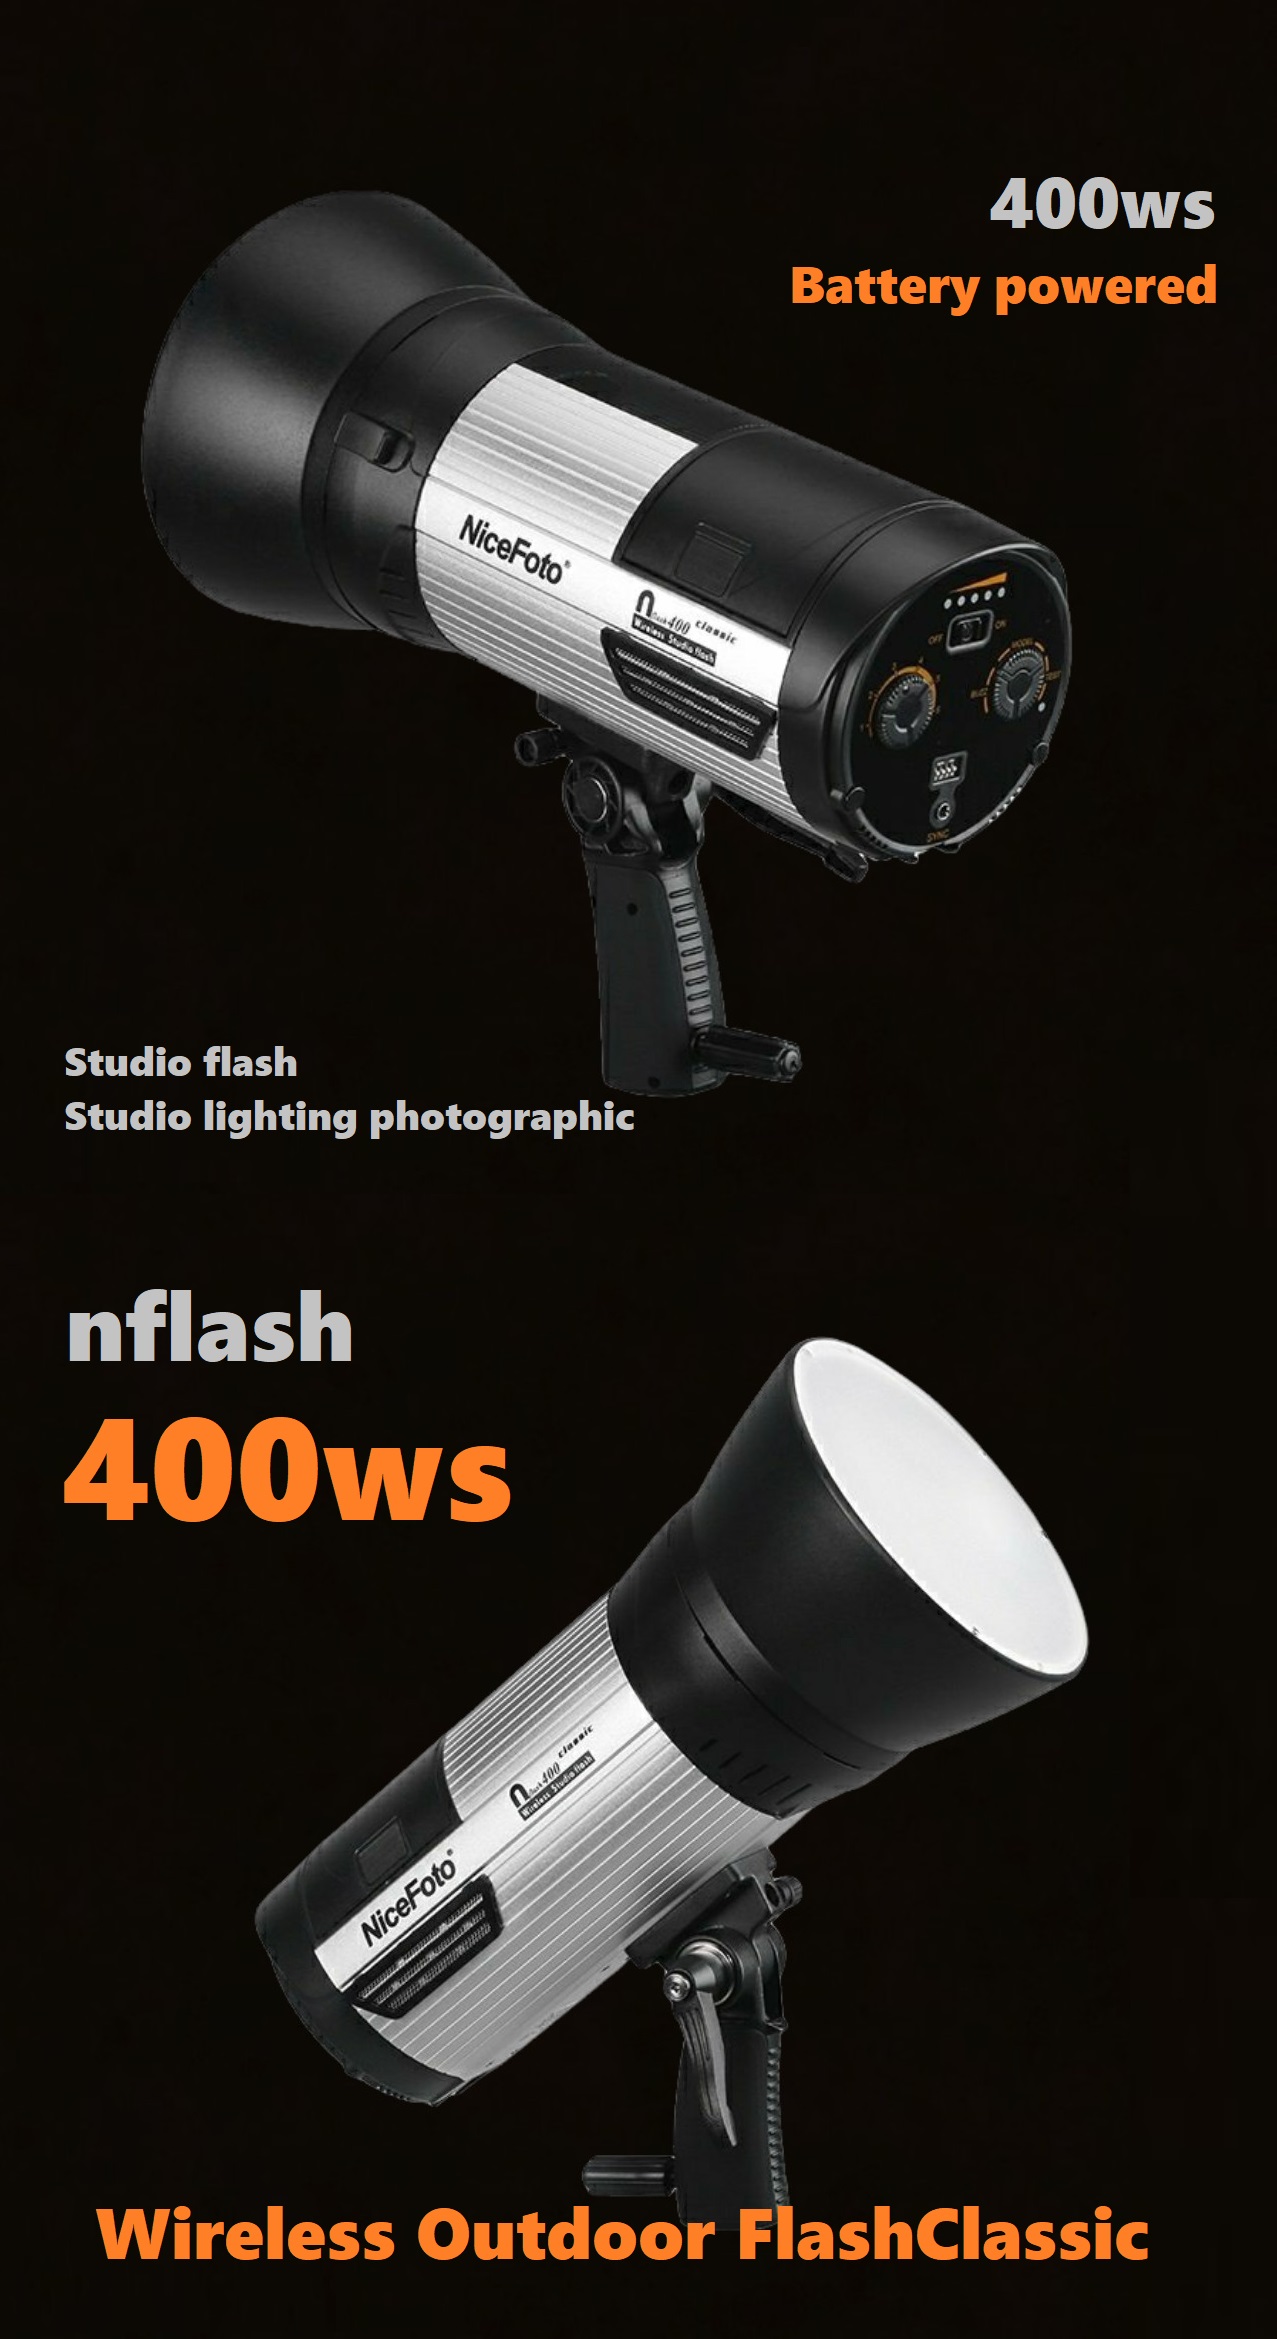 NiceFoto Nflash 300ws Đèn flash Studio thiết bị chụp ảnh cho ngoài trời